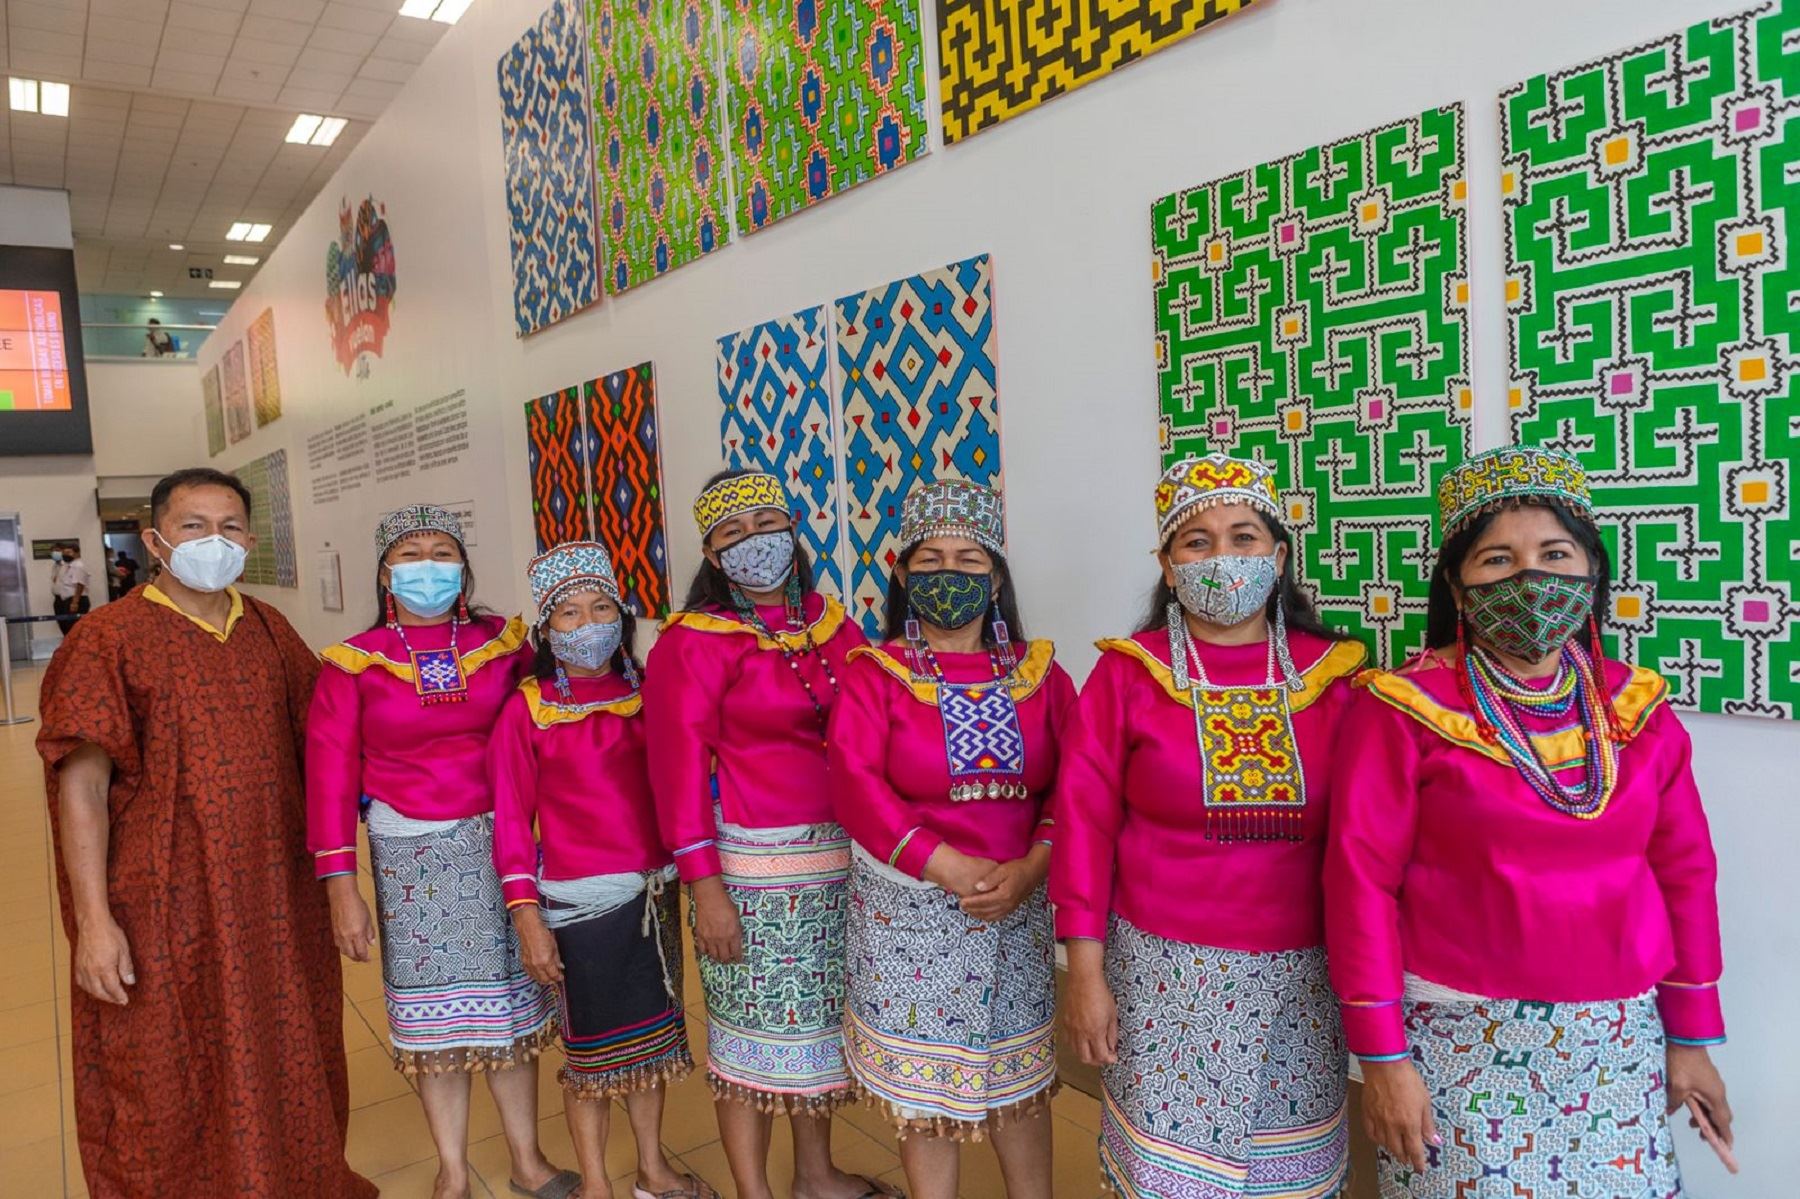 LAP celebra Día de la Mujer con inauguración de murales artísticos “Ellas vuelan alto"  Foto: Difusión